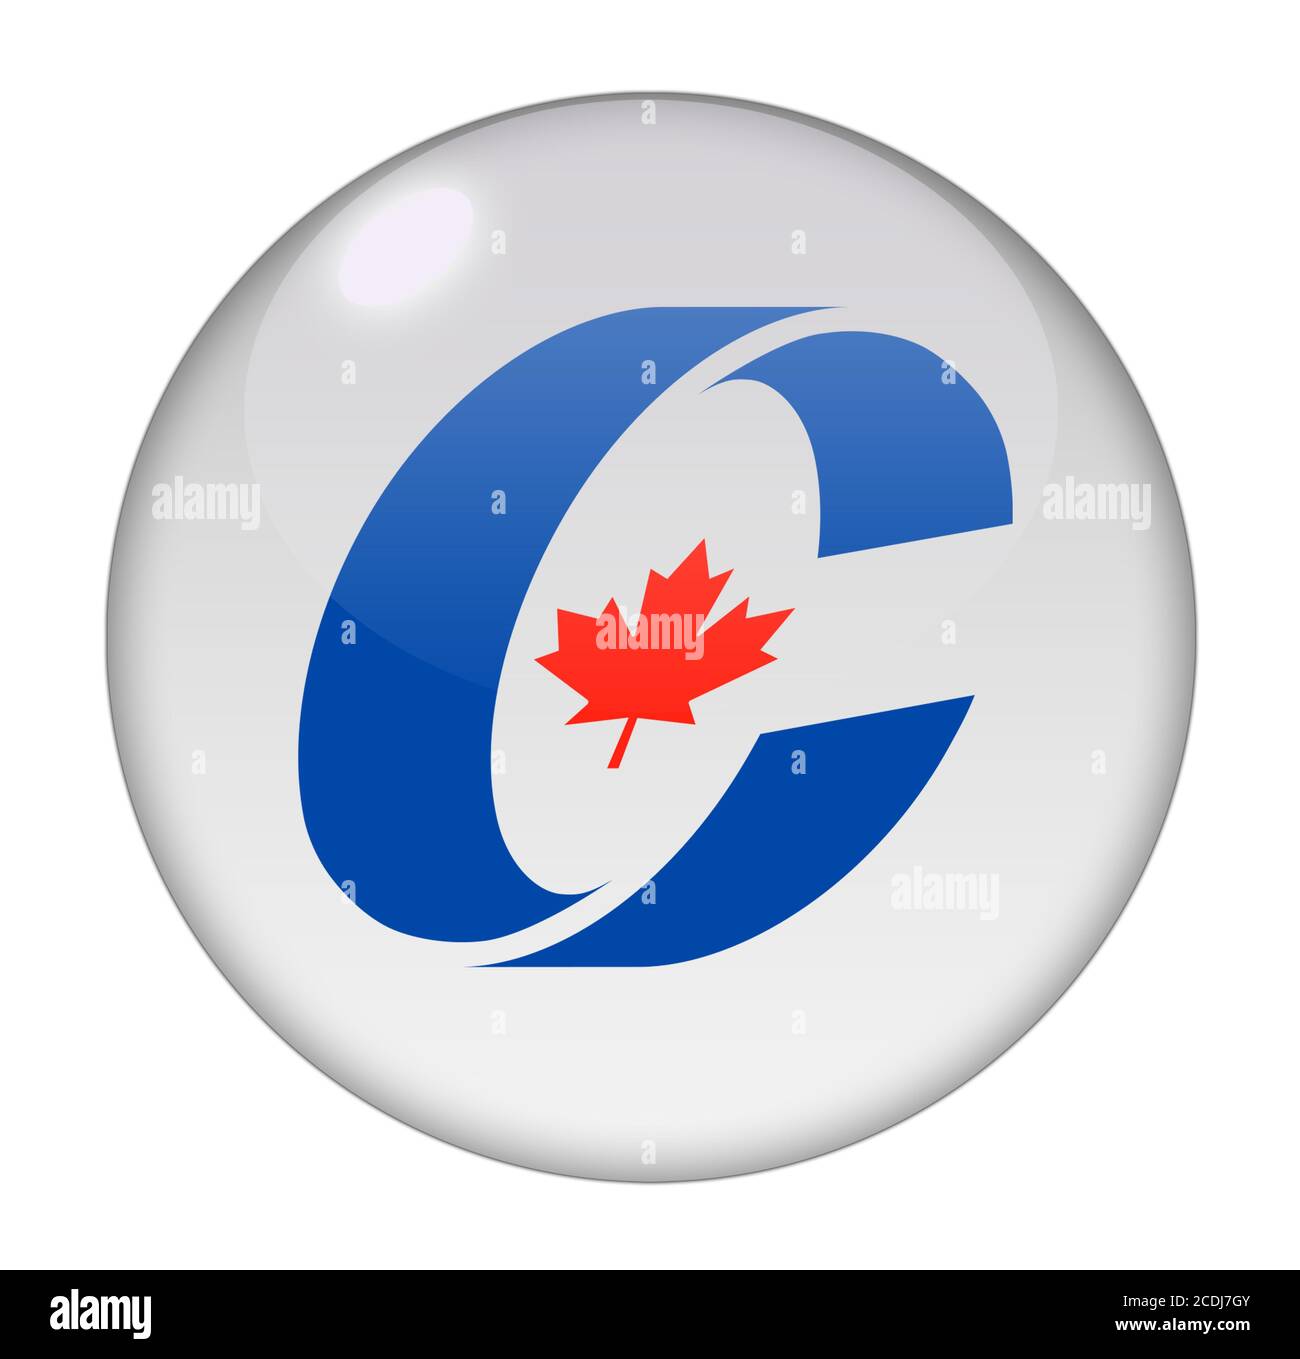 Partido conservador de Canadá Foto de stock